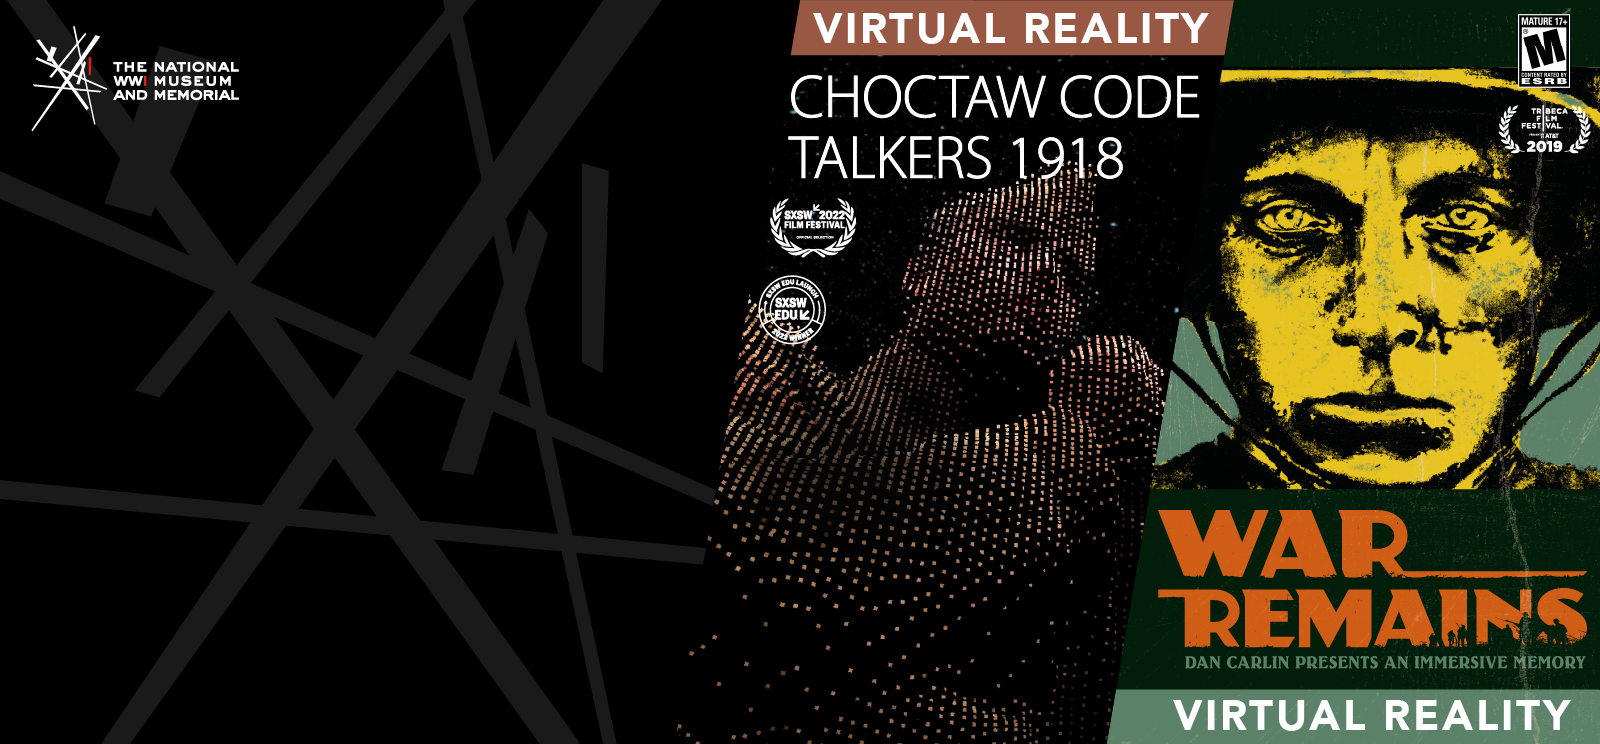 ဘယ်ဘက်ရုပ်ပုံ- WWI ယူနီဖောင်းရှိ Native American အမျိုးသားတစ်ဦး၏ 3D rendering ကို pixel-like ဂရပ်ဖစ်အဖြစ် ခွဲထားသည်။ စာသား- 'Choctaw Code Talkers 1918 / Virtual Reality' ညာဘက်ပုံ- ဦးထုပ်ဆောင်းထားသည့် ကြည့်ရှုသူအား စိုက်ကြည့်နေသော အမျိုးသားတစ်ဦး၏ ရွံ့ရွံ့နေသော မျက်နှာကို ပုံဖော်ထားသည့် ပိုစတာ ကာတွန်းပုံ။ စာသား- 'စစ်ပွဲကျန် / Virtual Reality'